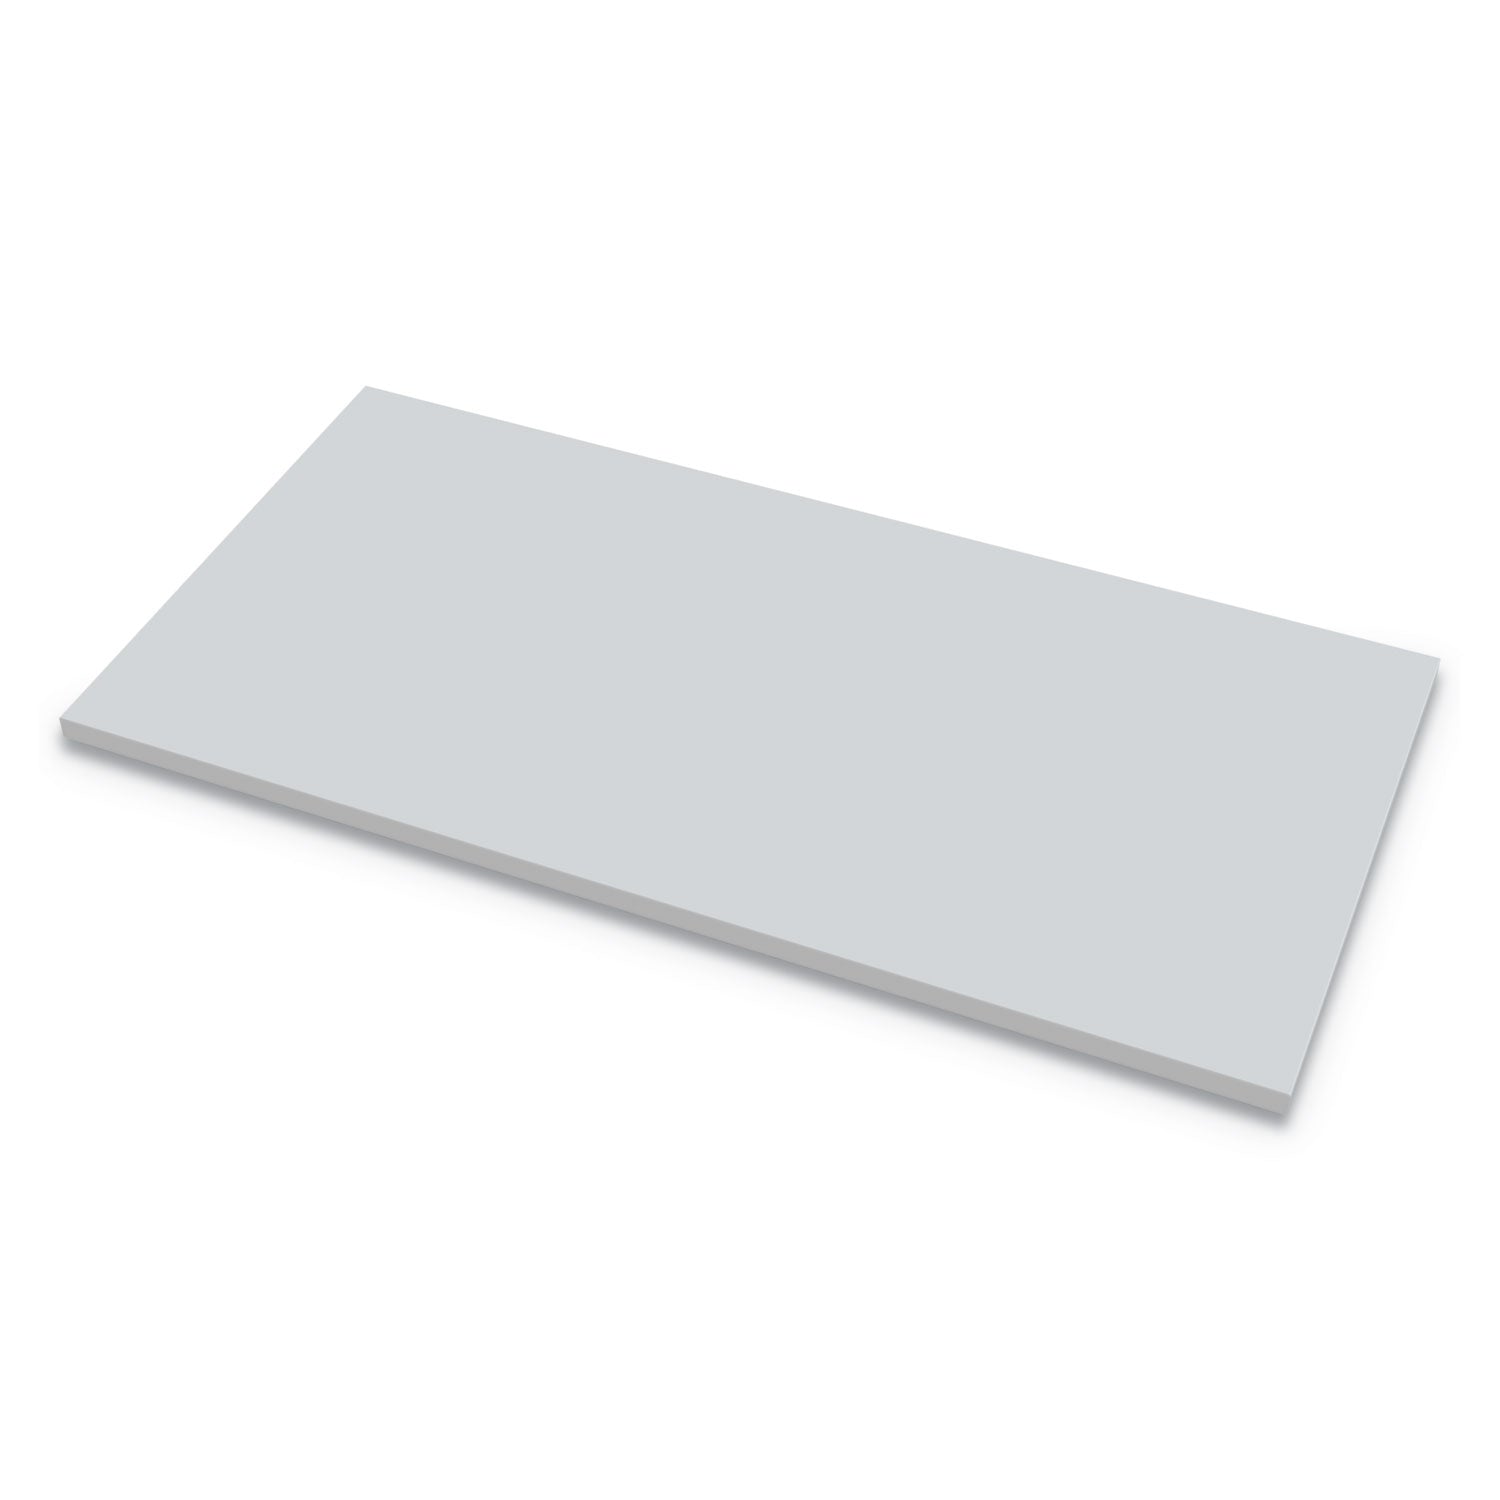 levado-laminate-table-top-60-x-30-gray_fel9649501 - 1